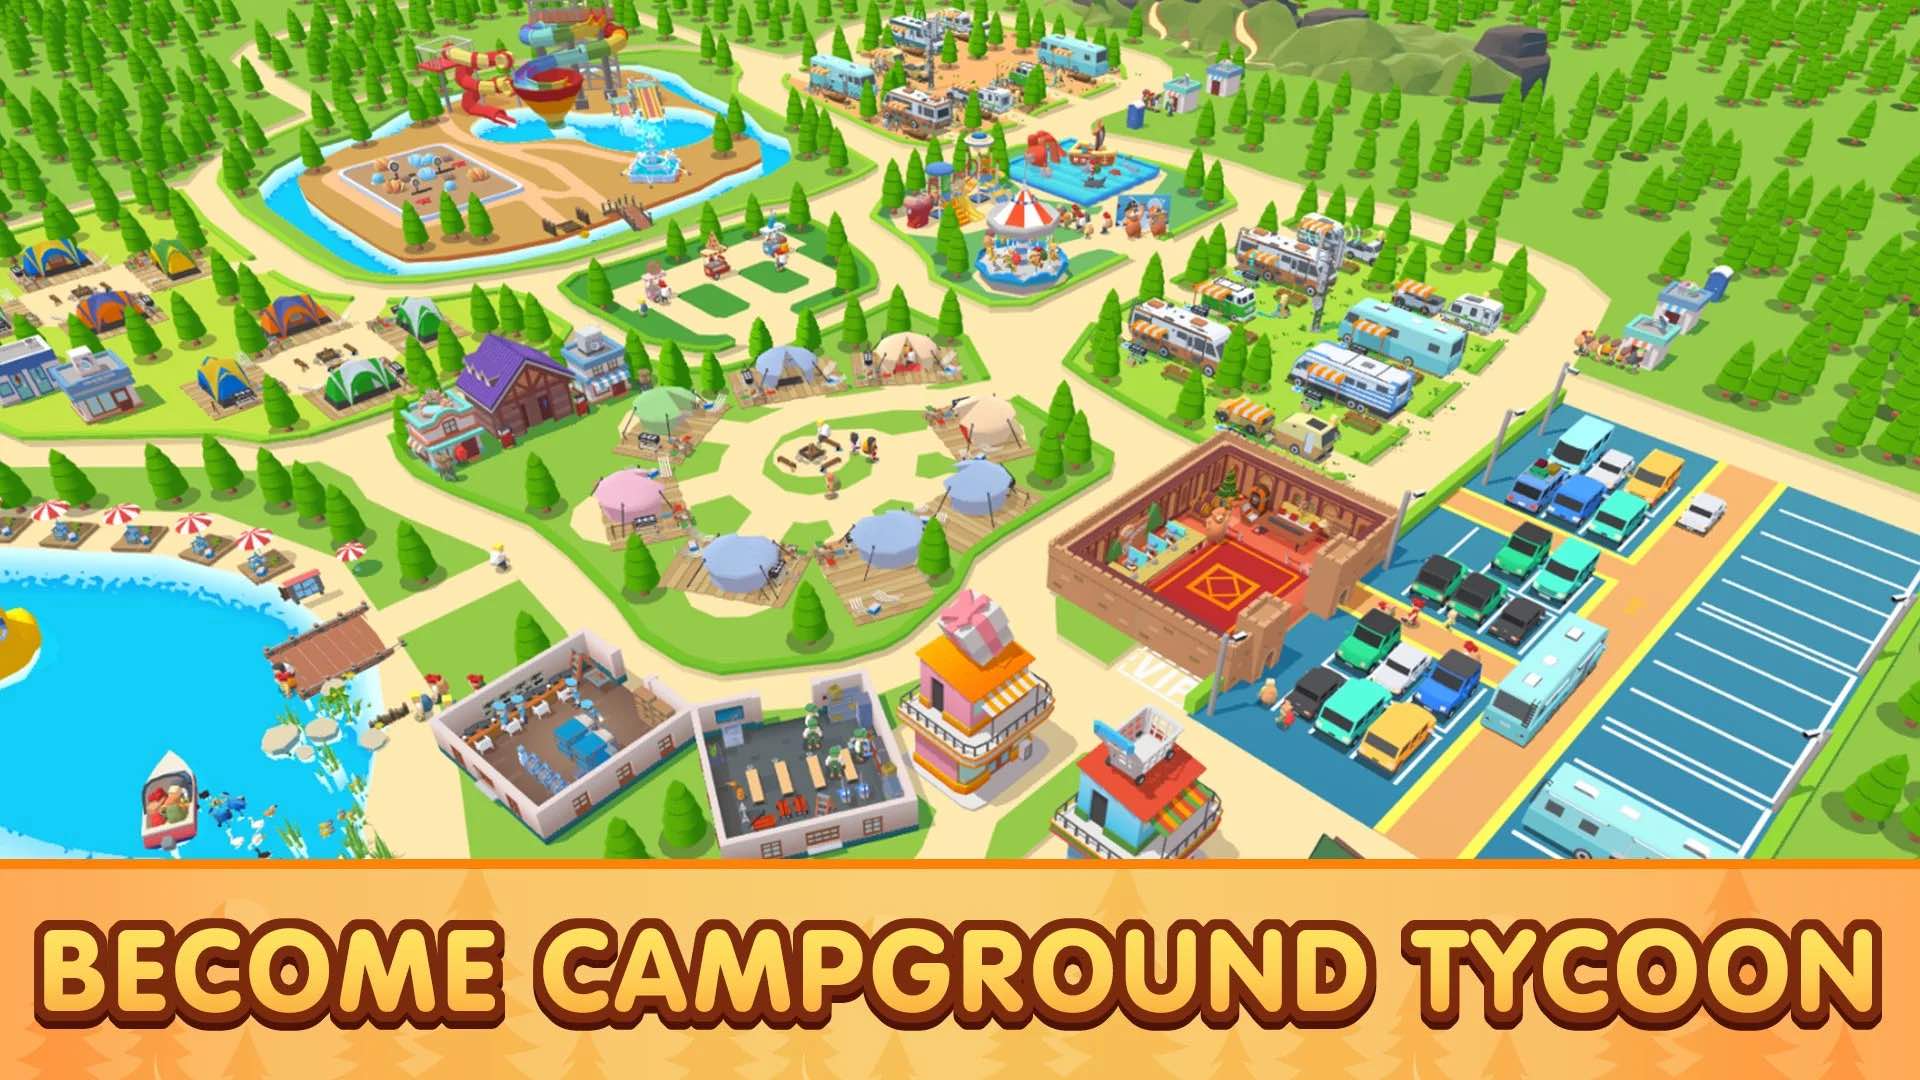 Camp tycoon. Camping Tycoon. Camping игра. Campsite игра. Игры где можно строить лагерь.